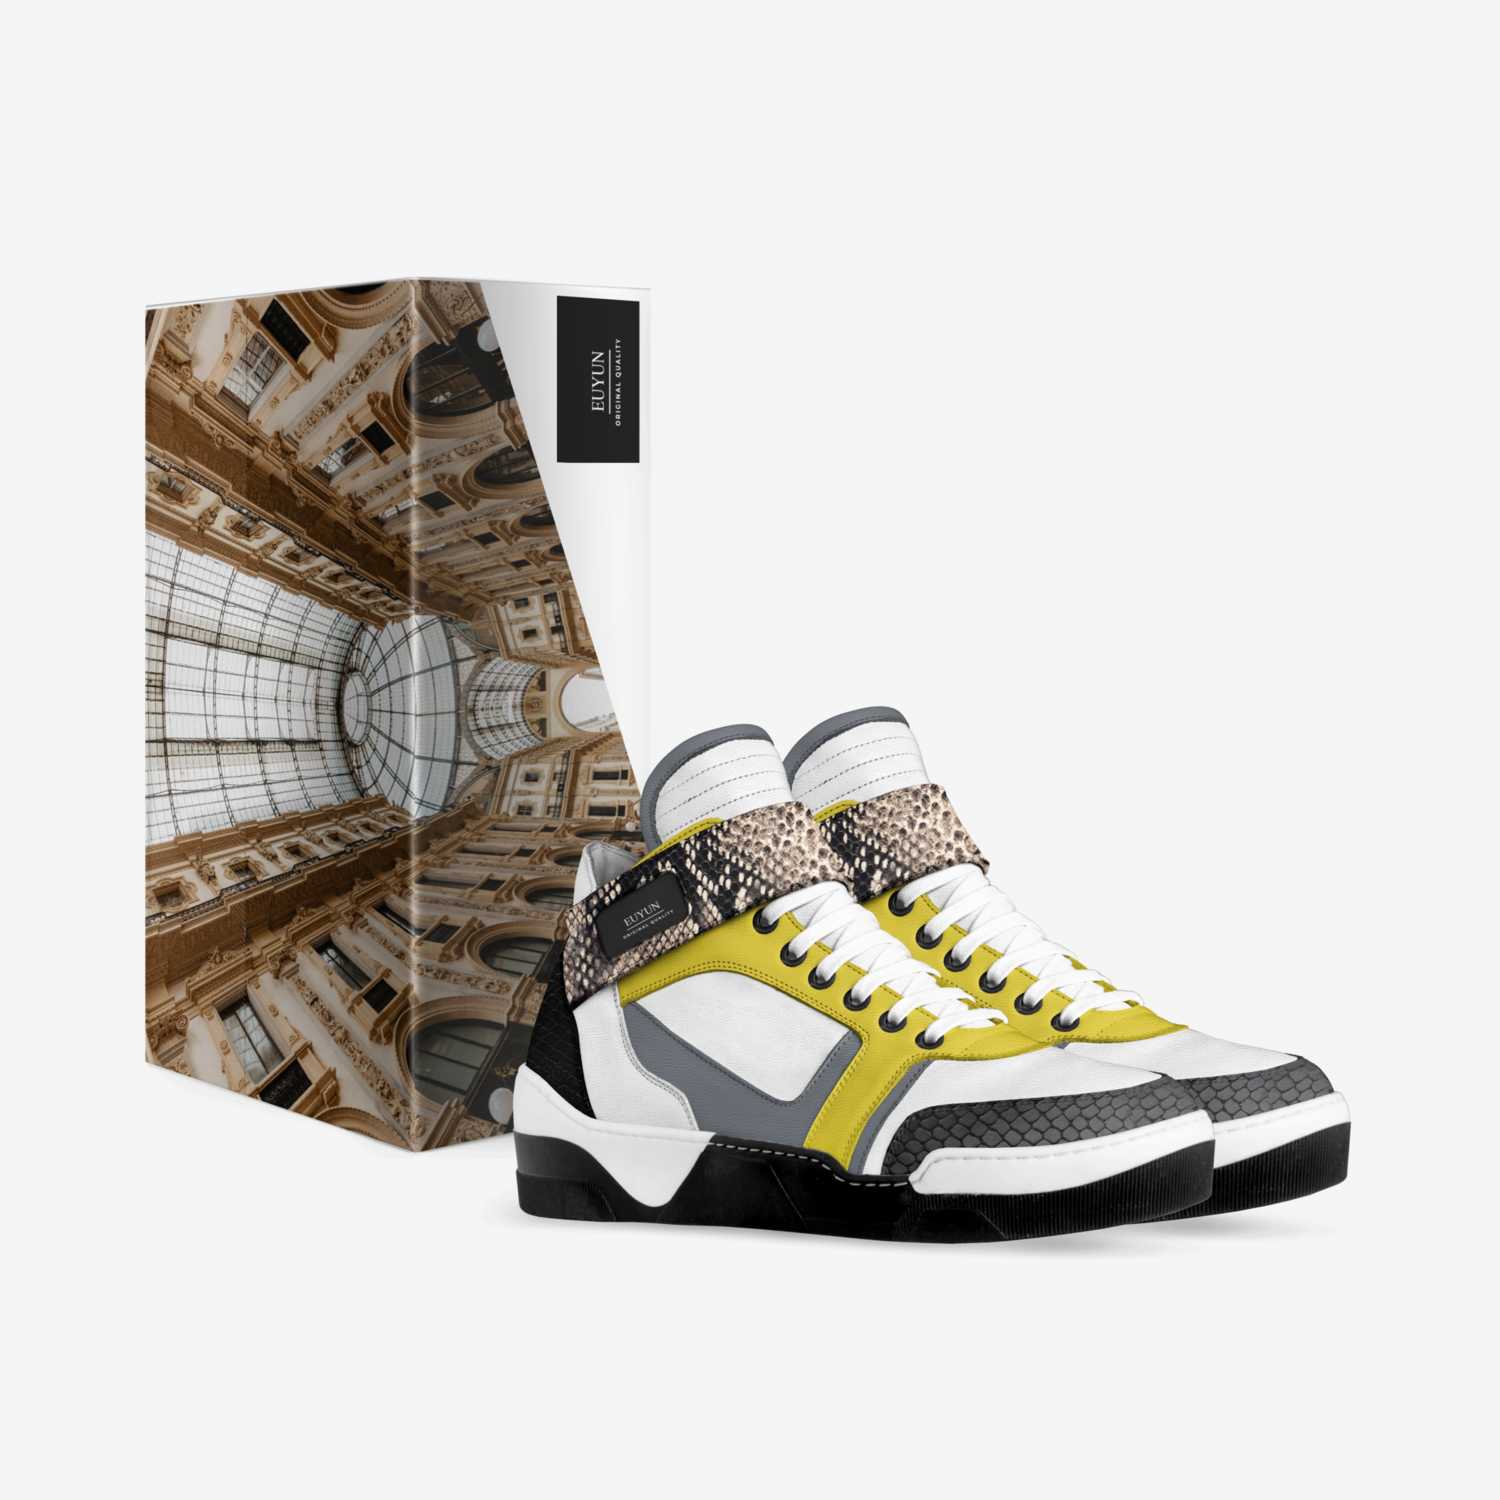 EUYUN3 custom made in Italy shoes by Nadiyah Islam | Box view